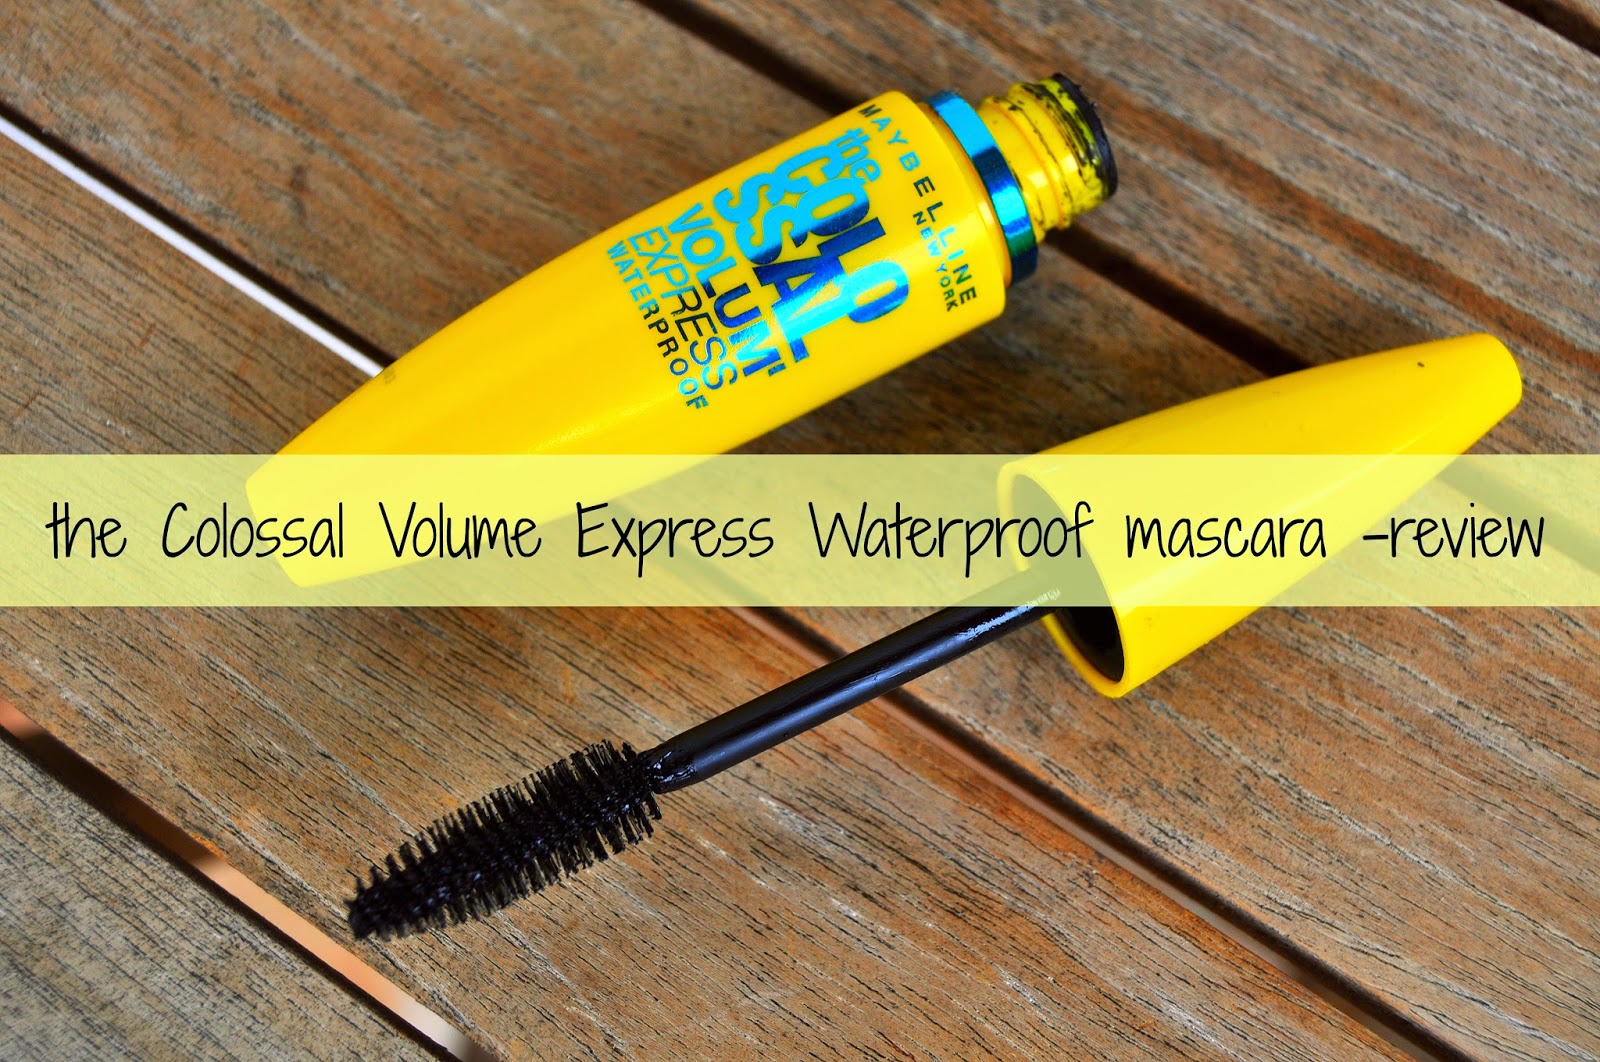 Et centralt værktøj, der spiller en vigtig rolle kobling Paranafloden Beautysaur: the Colossal Volume Express Waterproof mascara -review